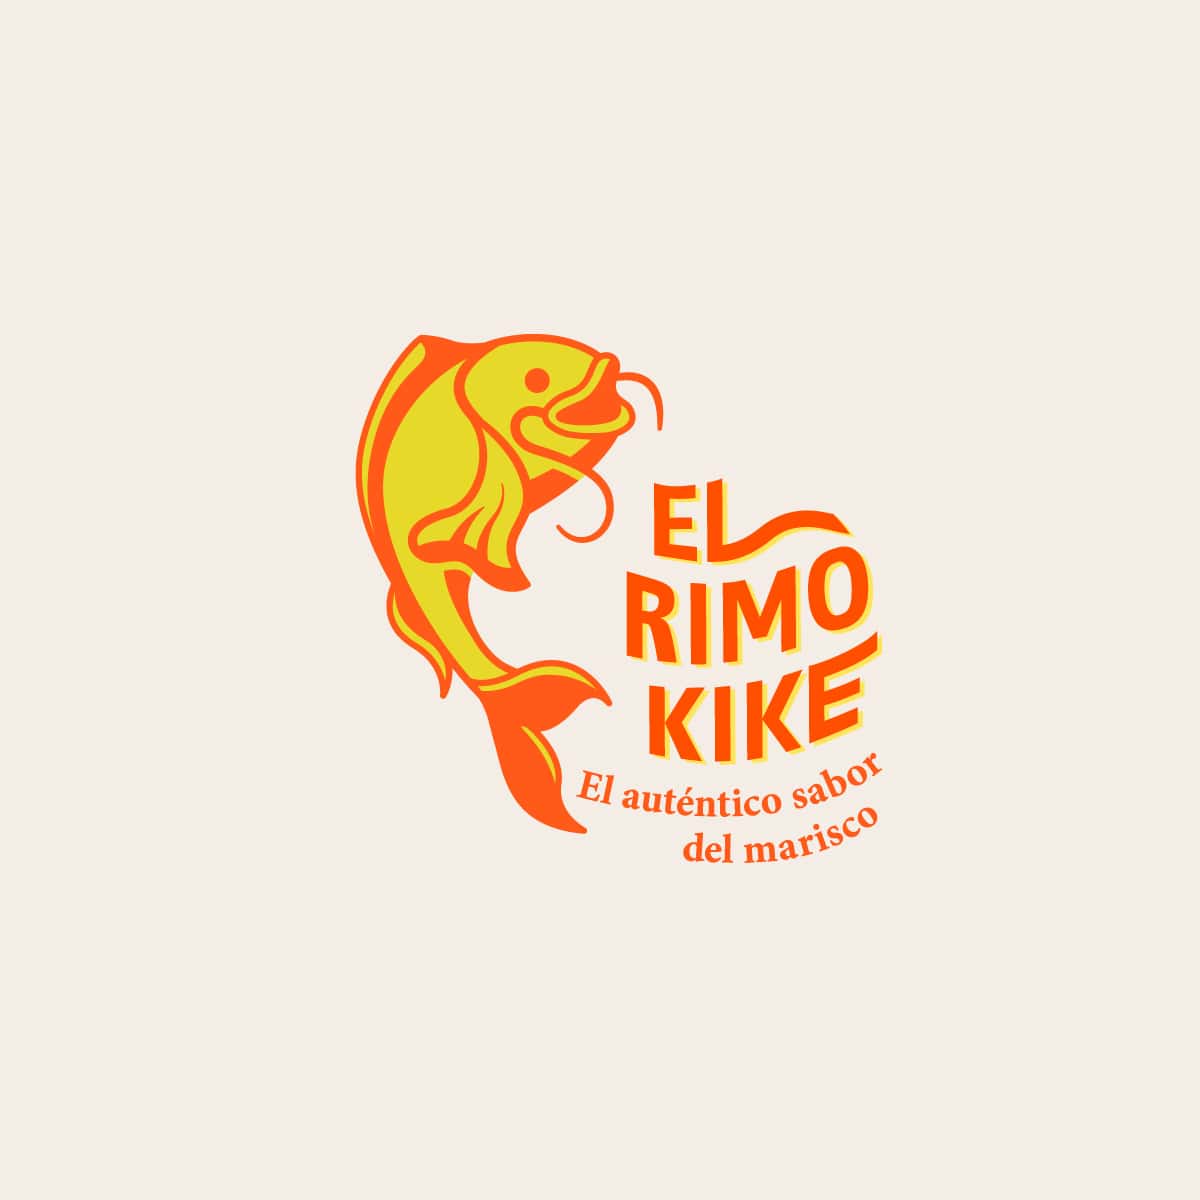 El Primo Kike